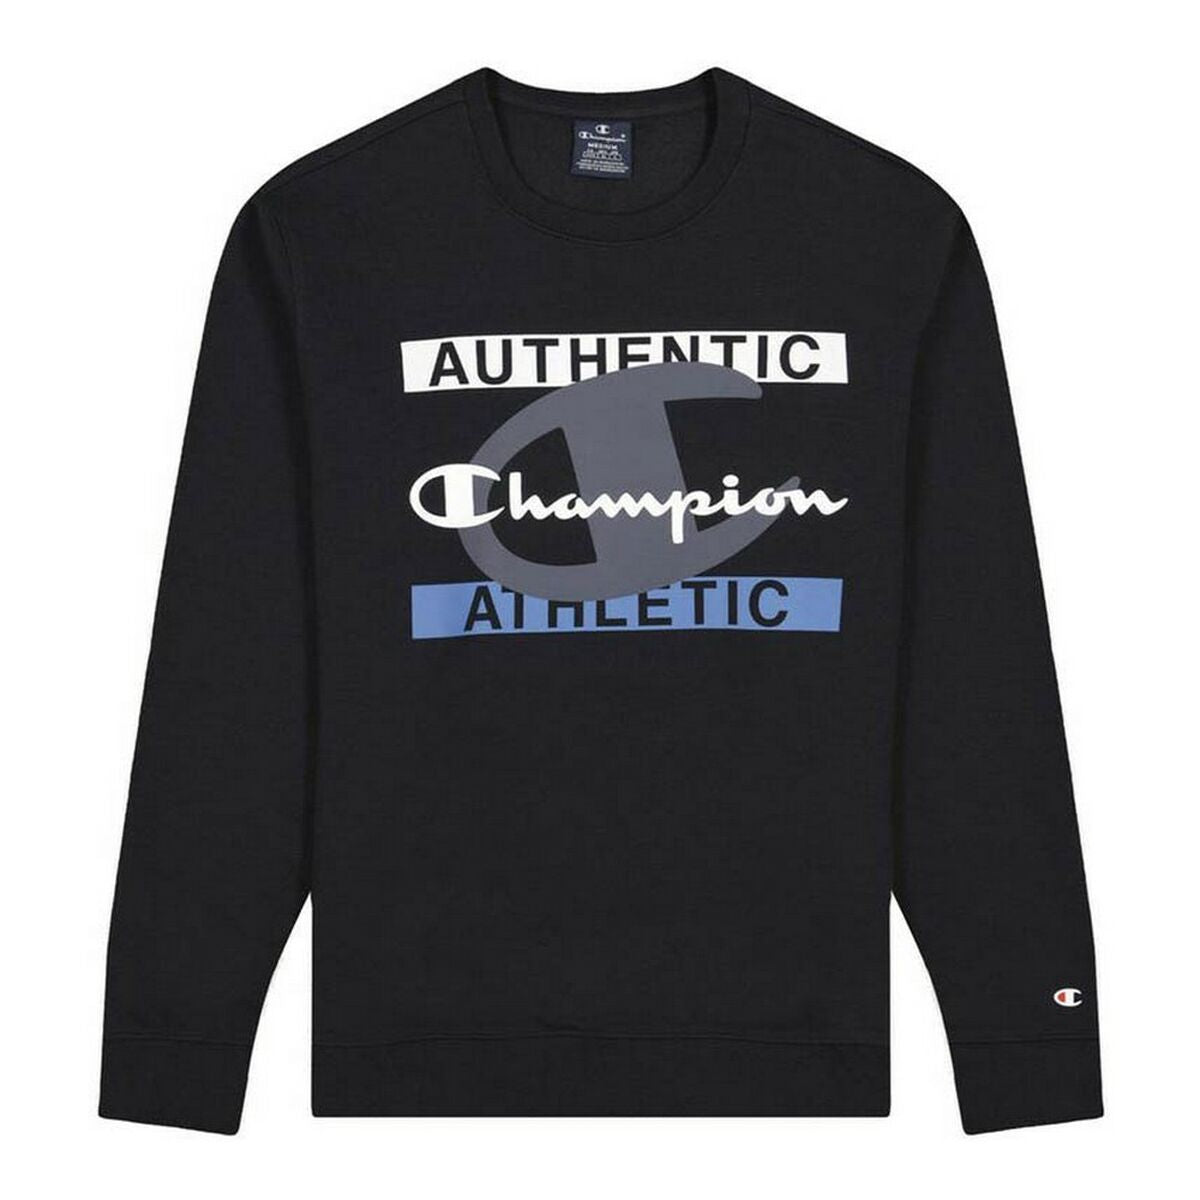 Kaufe Herren Sweater ohne Kapuze Champion Authentic Athletic Schwarz bei AWK Flagship um € 62.00